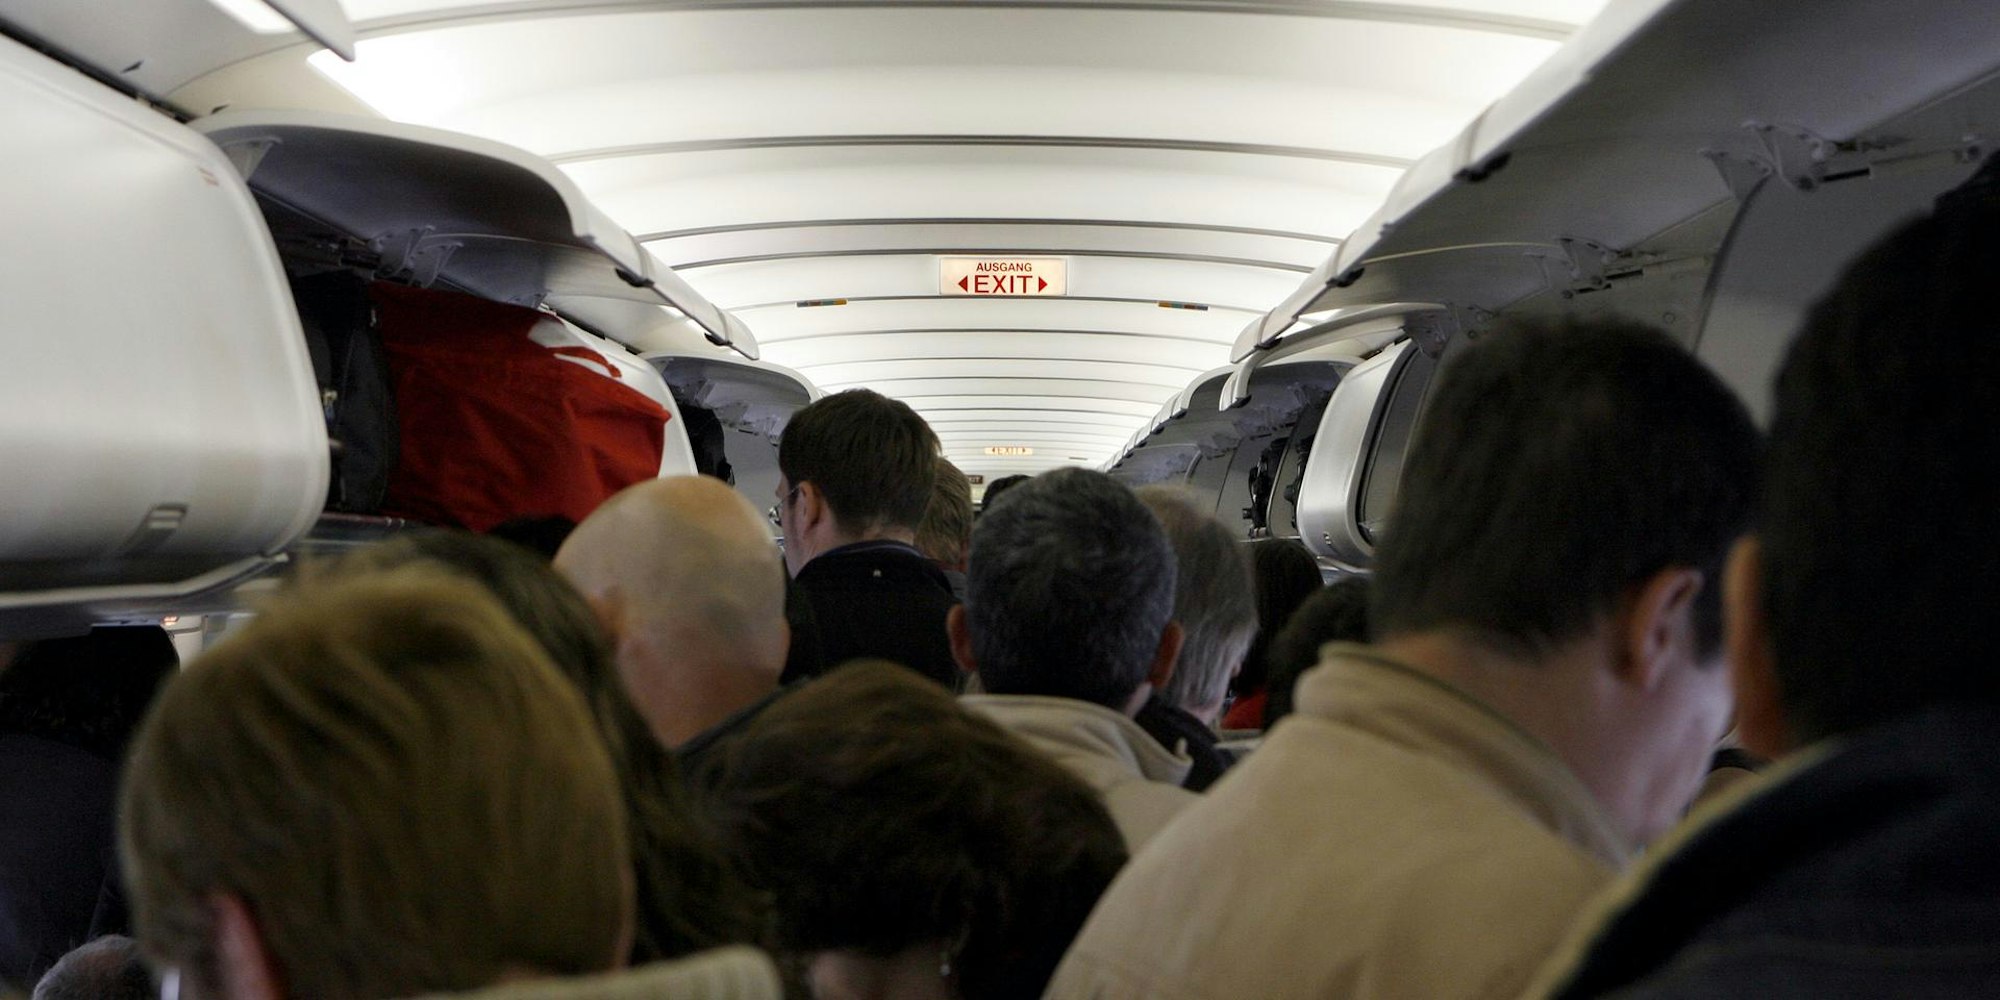 Passagiere stehen im Gang eines Flugzeuges